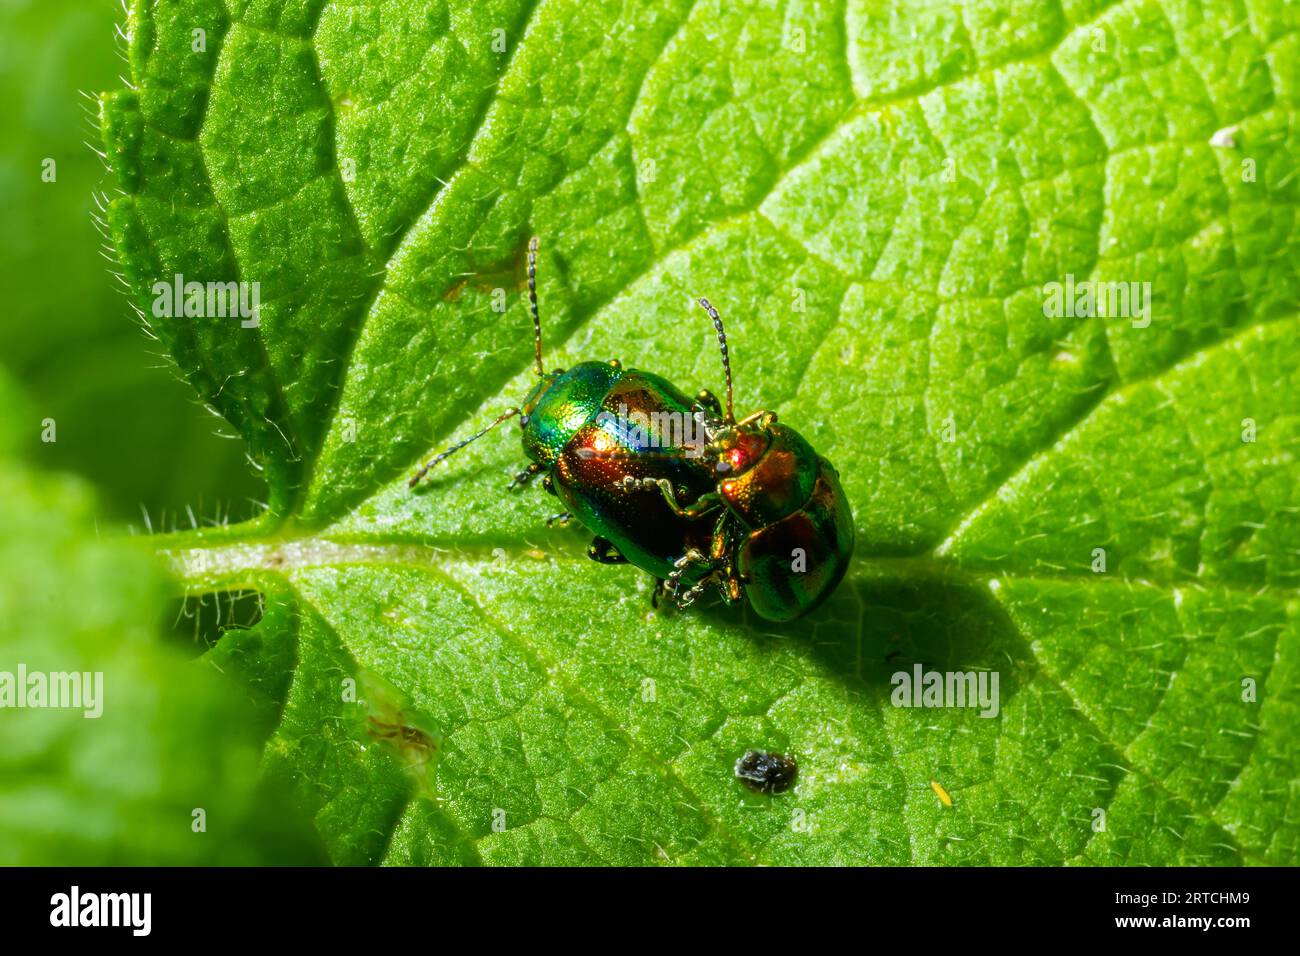 due coleotteri a foglia lucida con colori arcobaleno durante l'accoppiamento degli insetti, crisolina fastuosa. Foto Stock